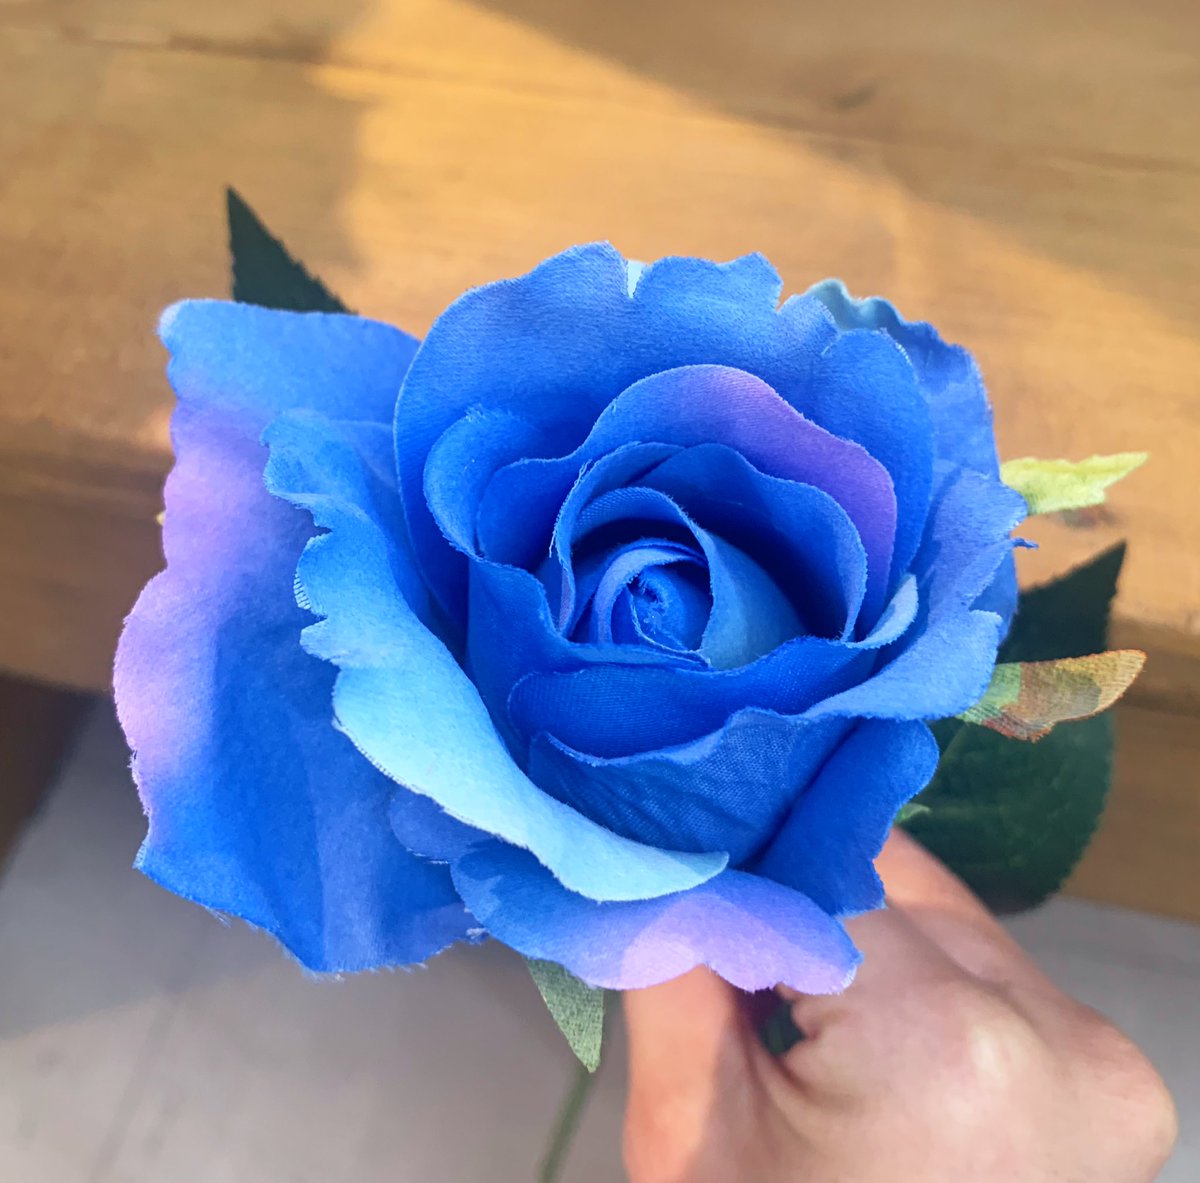 𝓨𝓪𝓼 青ヰ 鱗 薔薇の描き方 T Co Oyn1xhfdxm Twitter